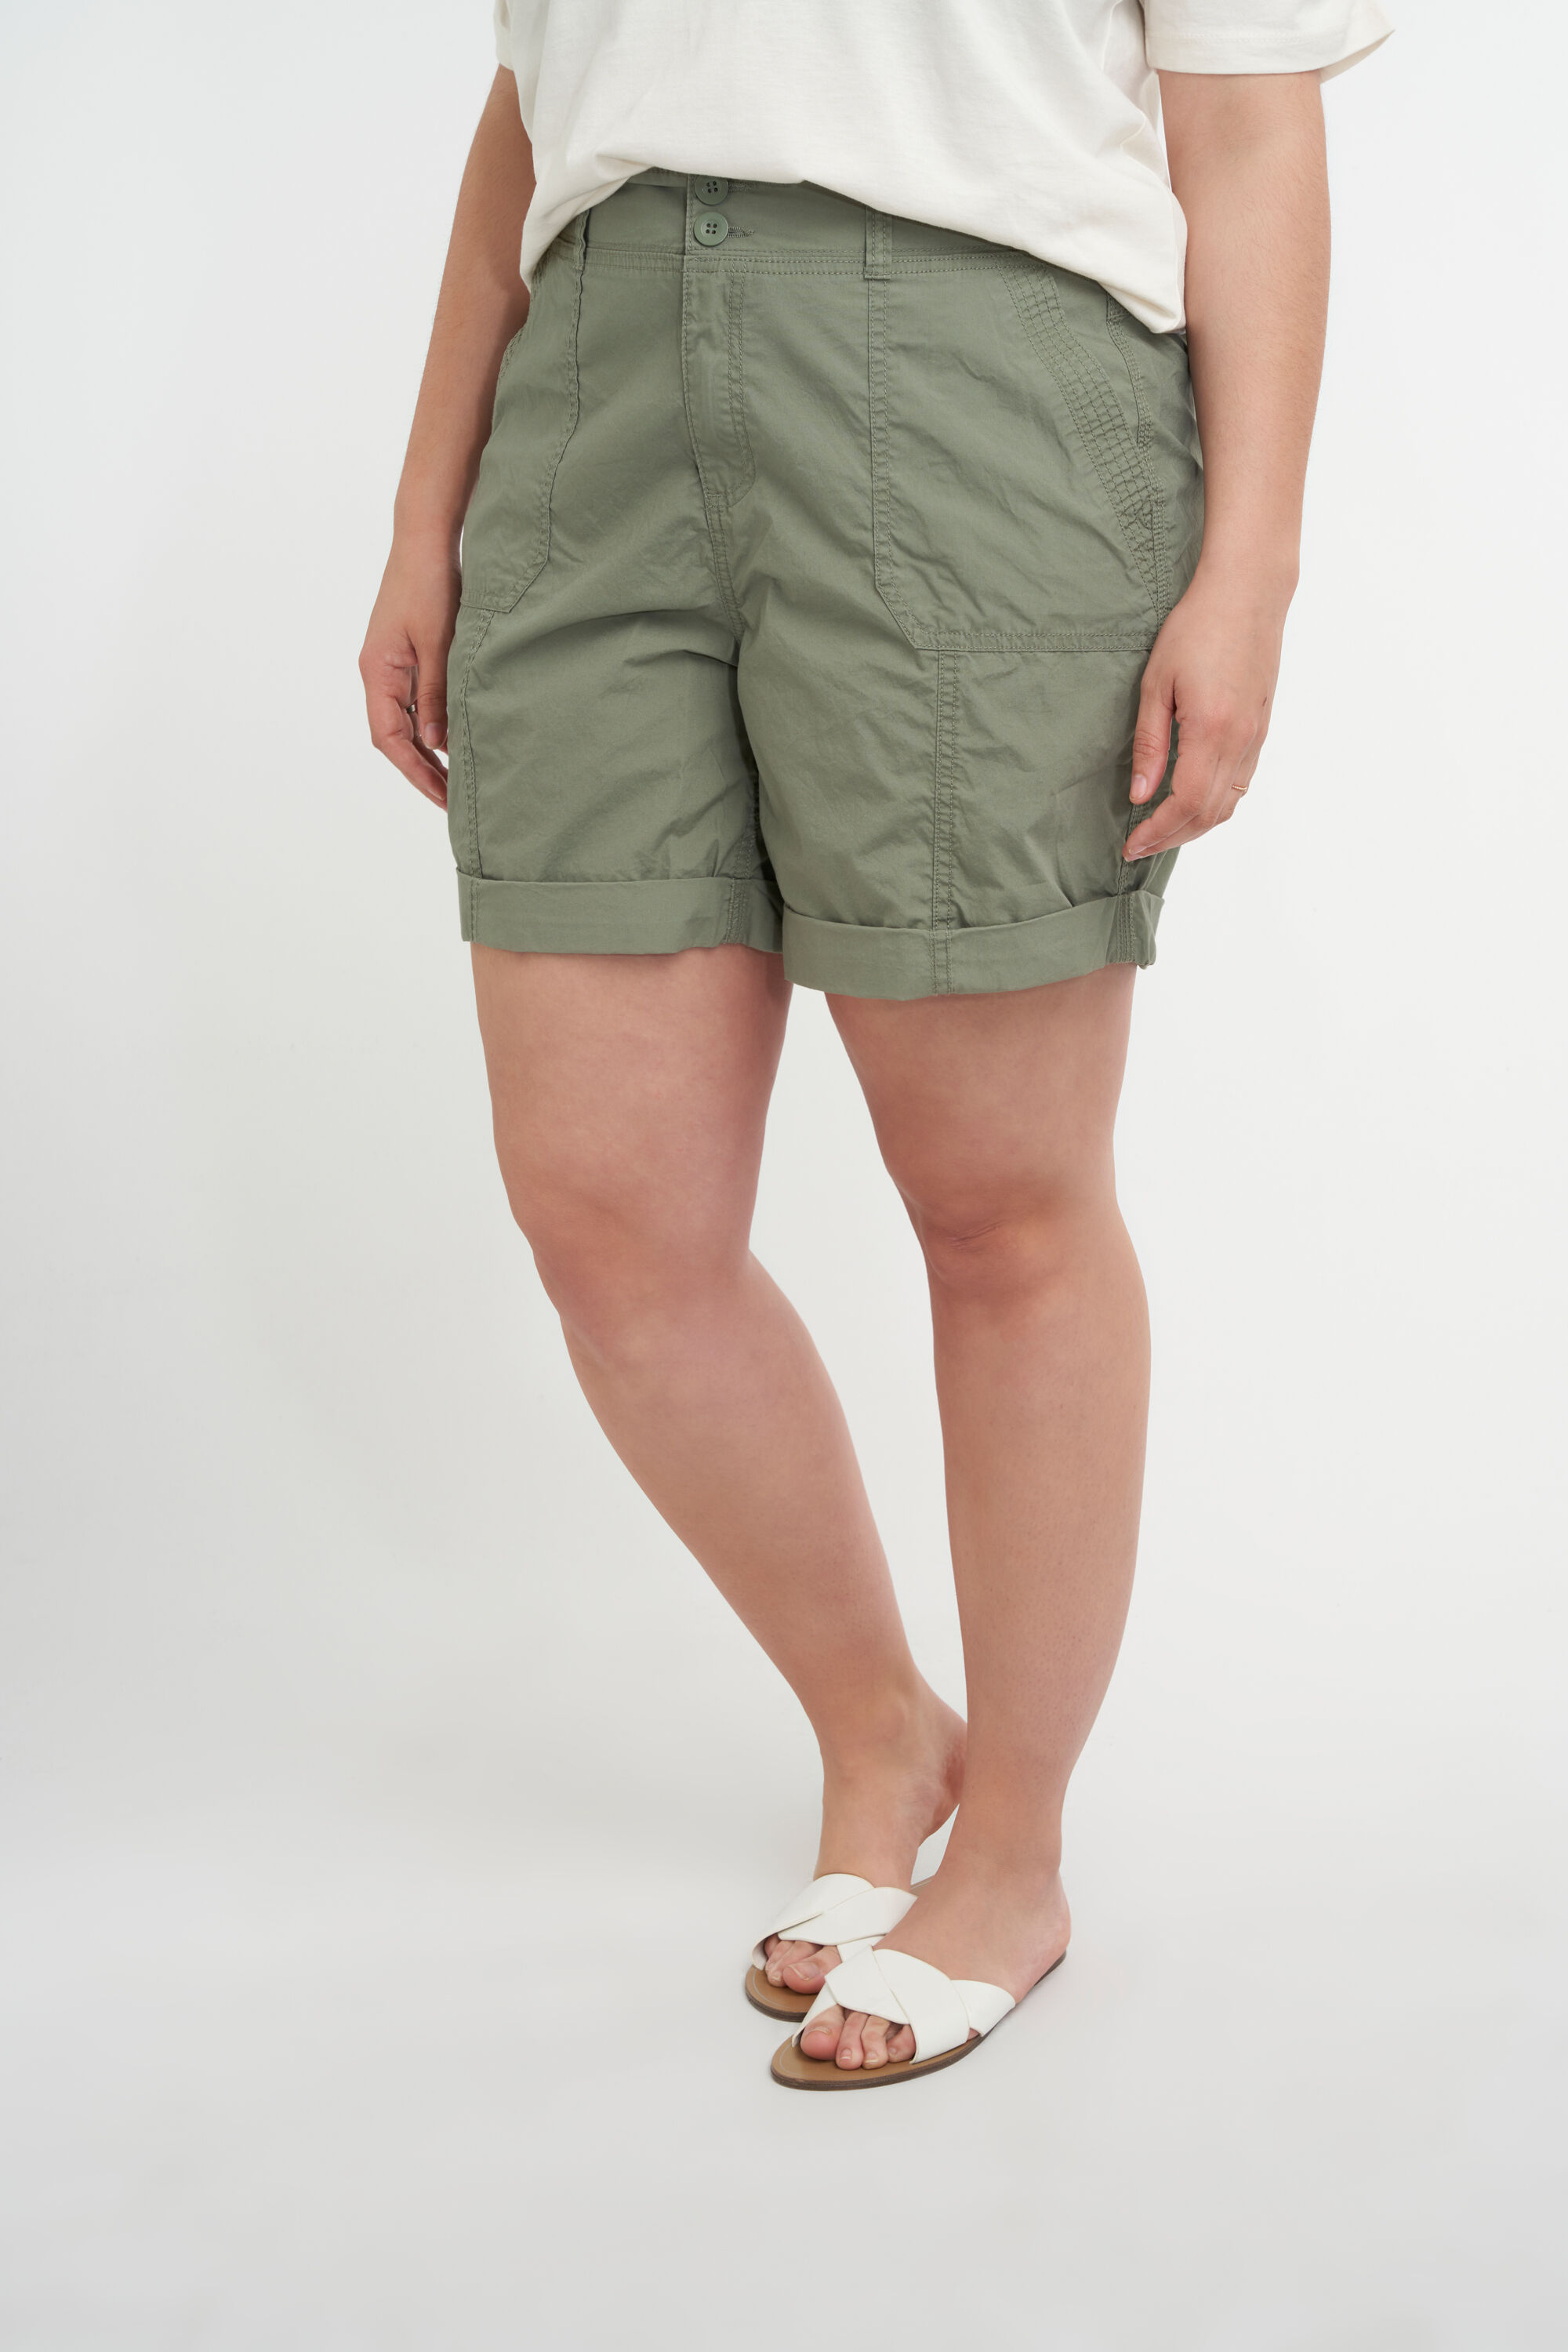 Mode Broeken Shorts Equipment Short groen casual uitstraling 